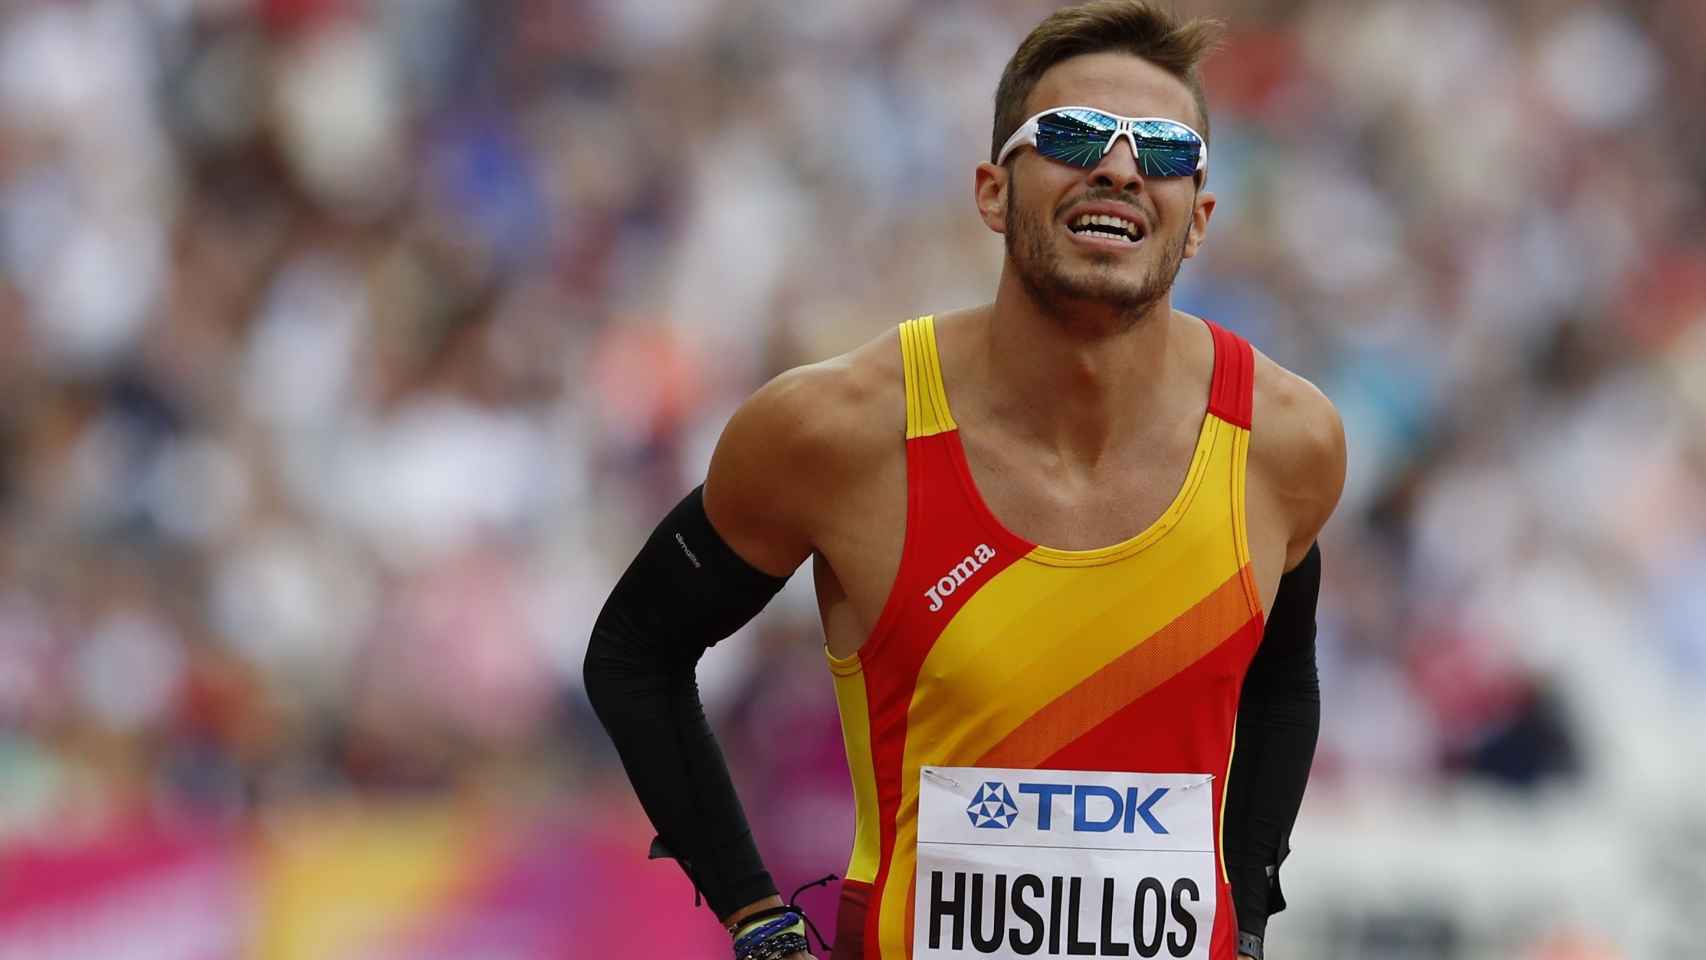 Óscar Husillos avanzó a semifinales de los 400 tras firmar su mejor marca personal (45.22s).